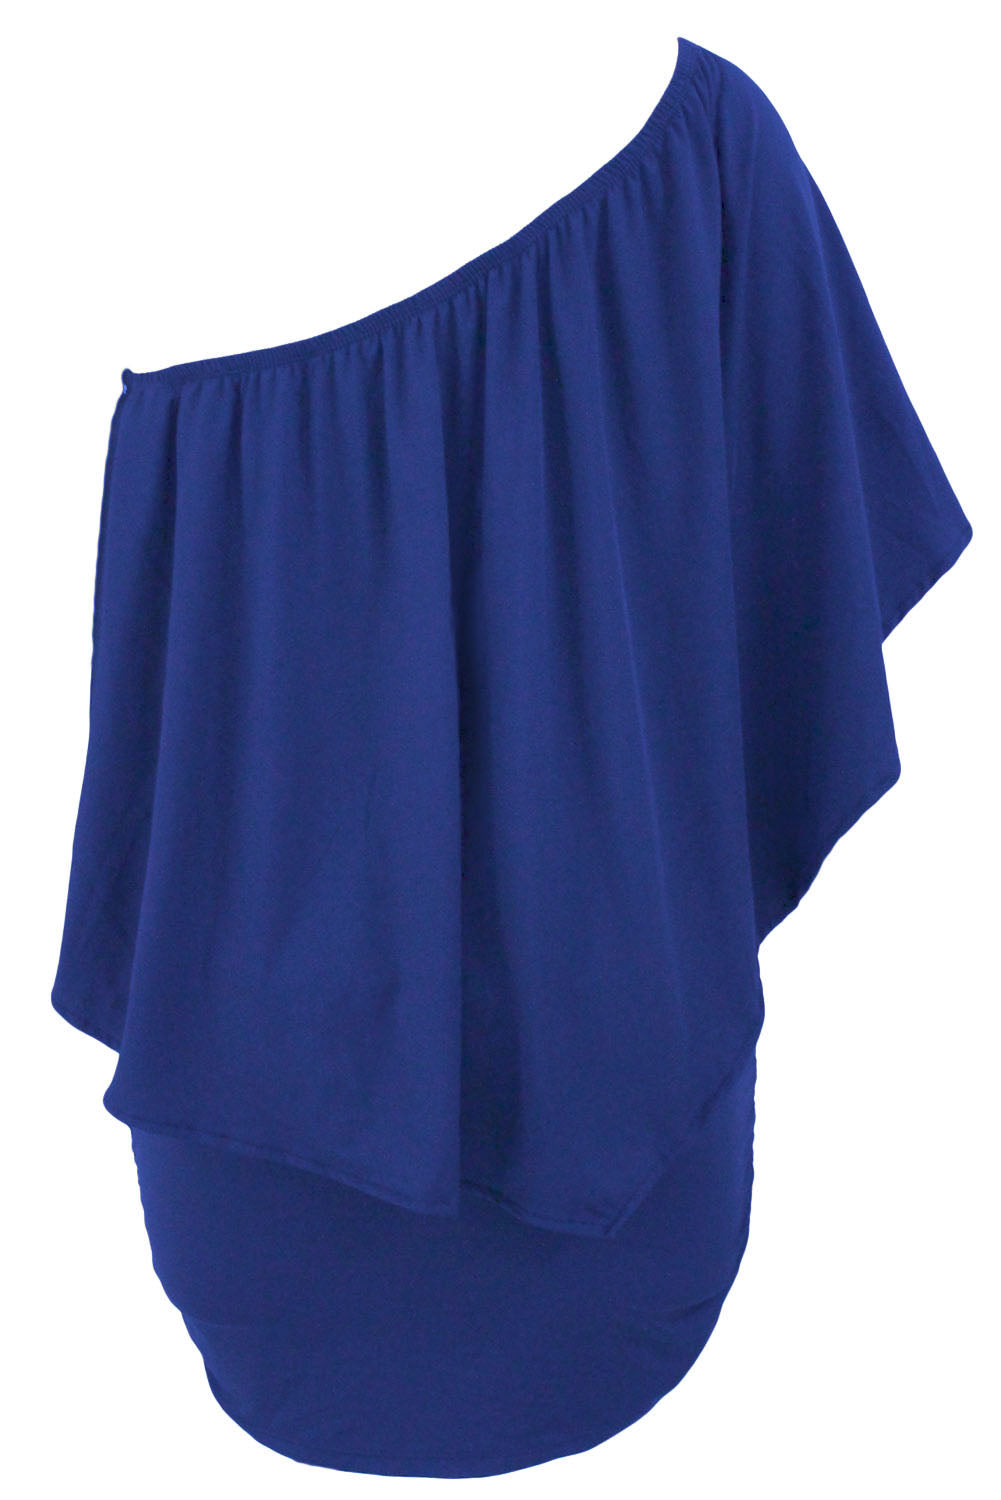 Robe mini poncho bleue superposée à plusieurs pansements